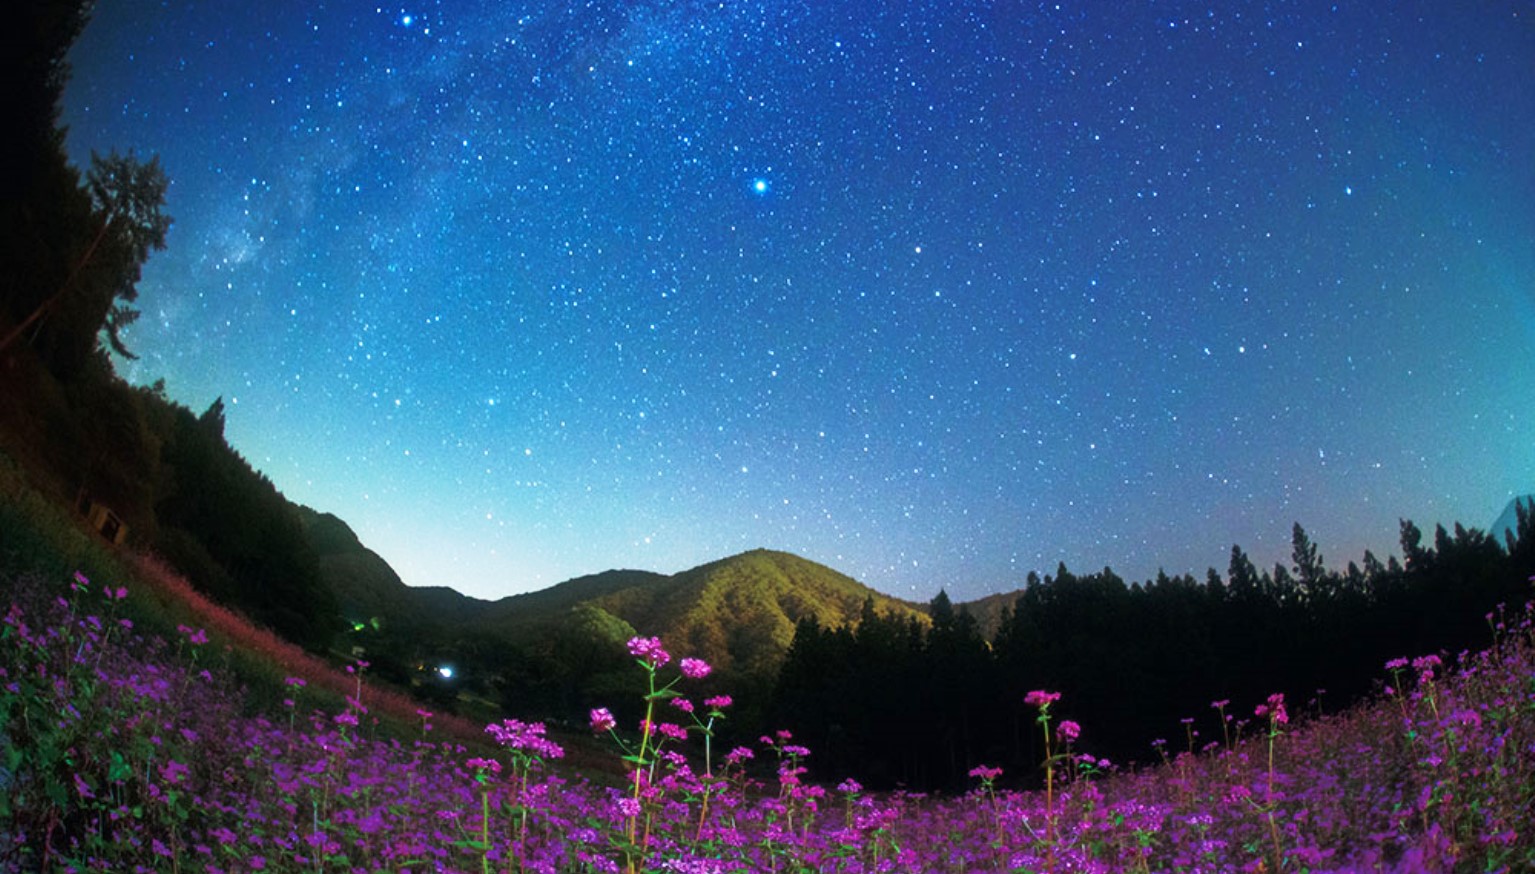 【ナイトツアー】日本一の星の村で見る「満天の星空」